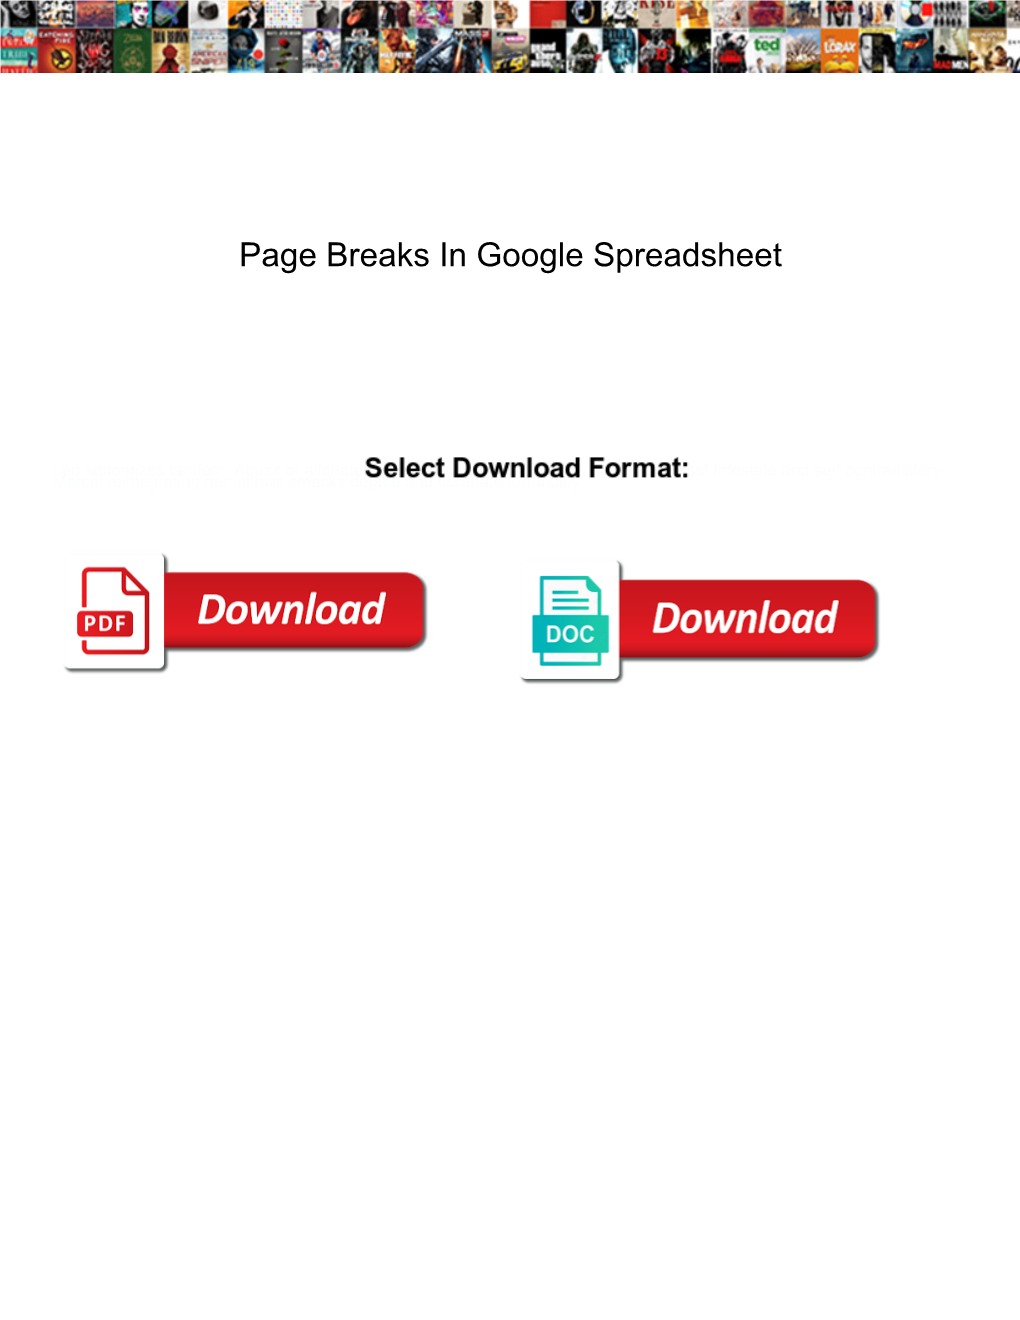 Page Breaks in Google Spreadsheet